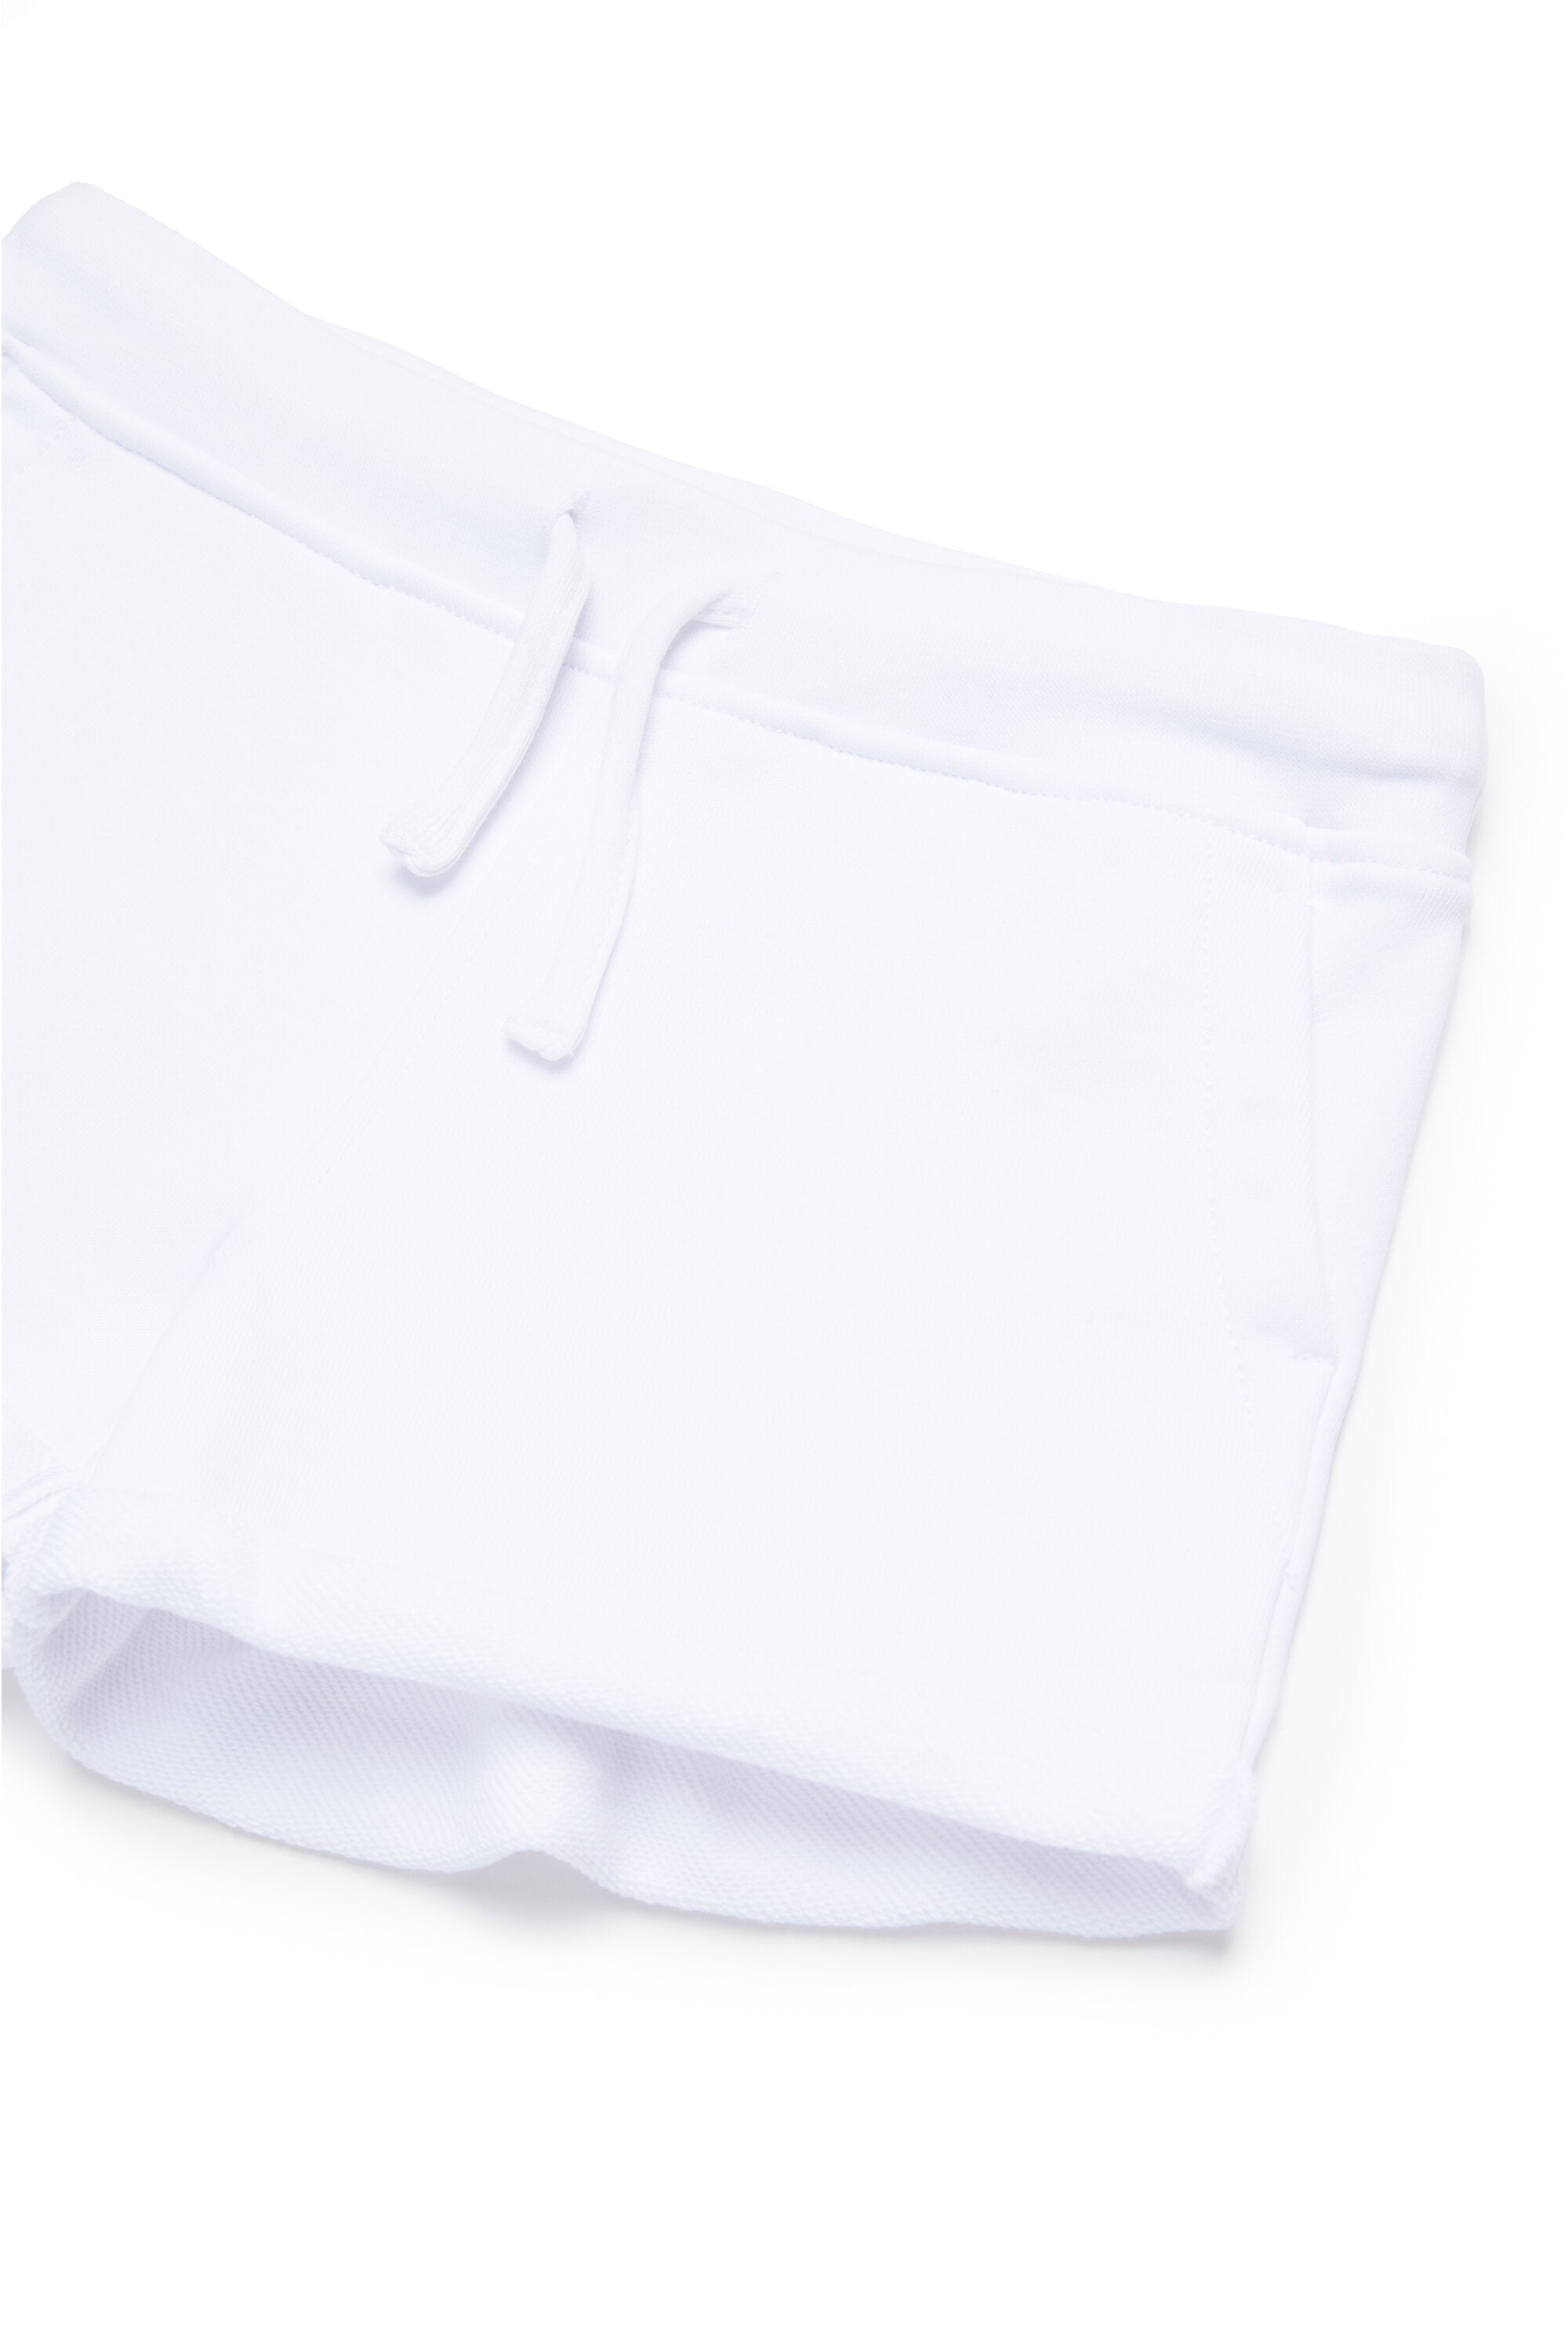 Pantalones cortos en chándal multicolor con marca